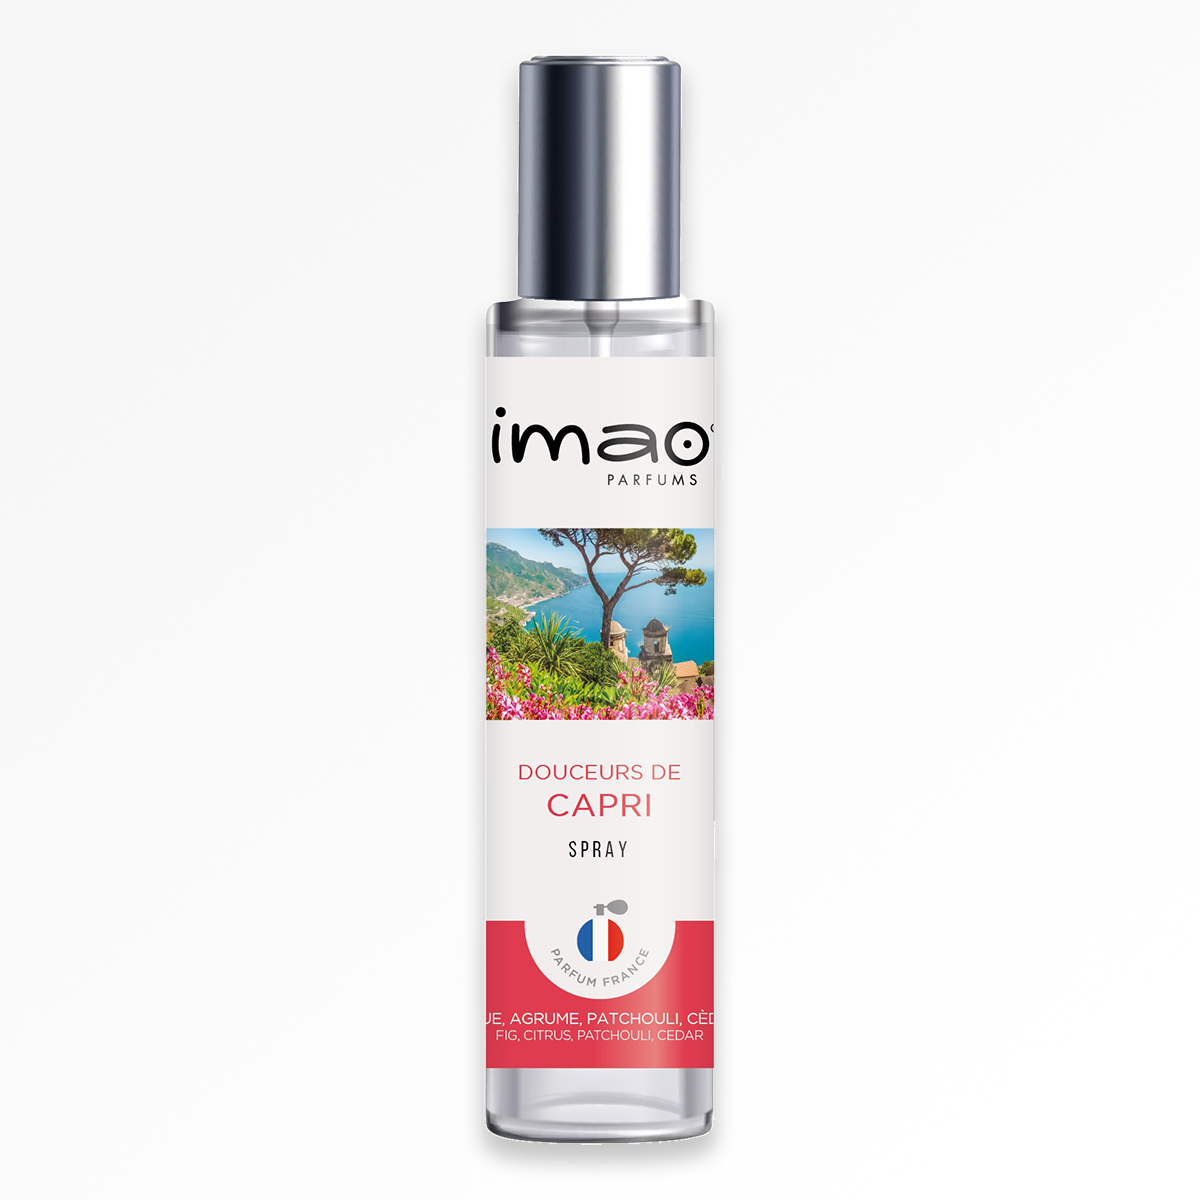 Capri Spray